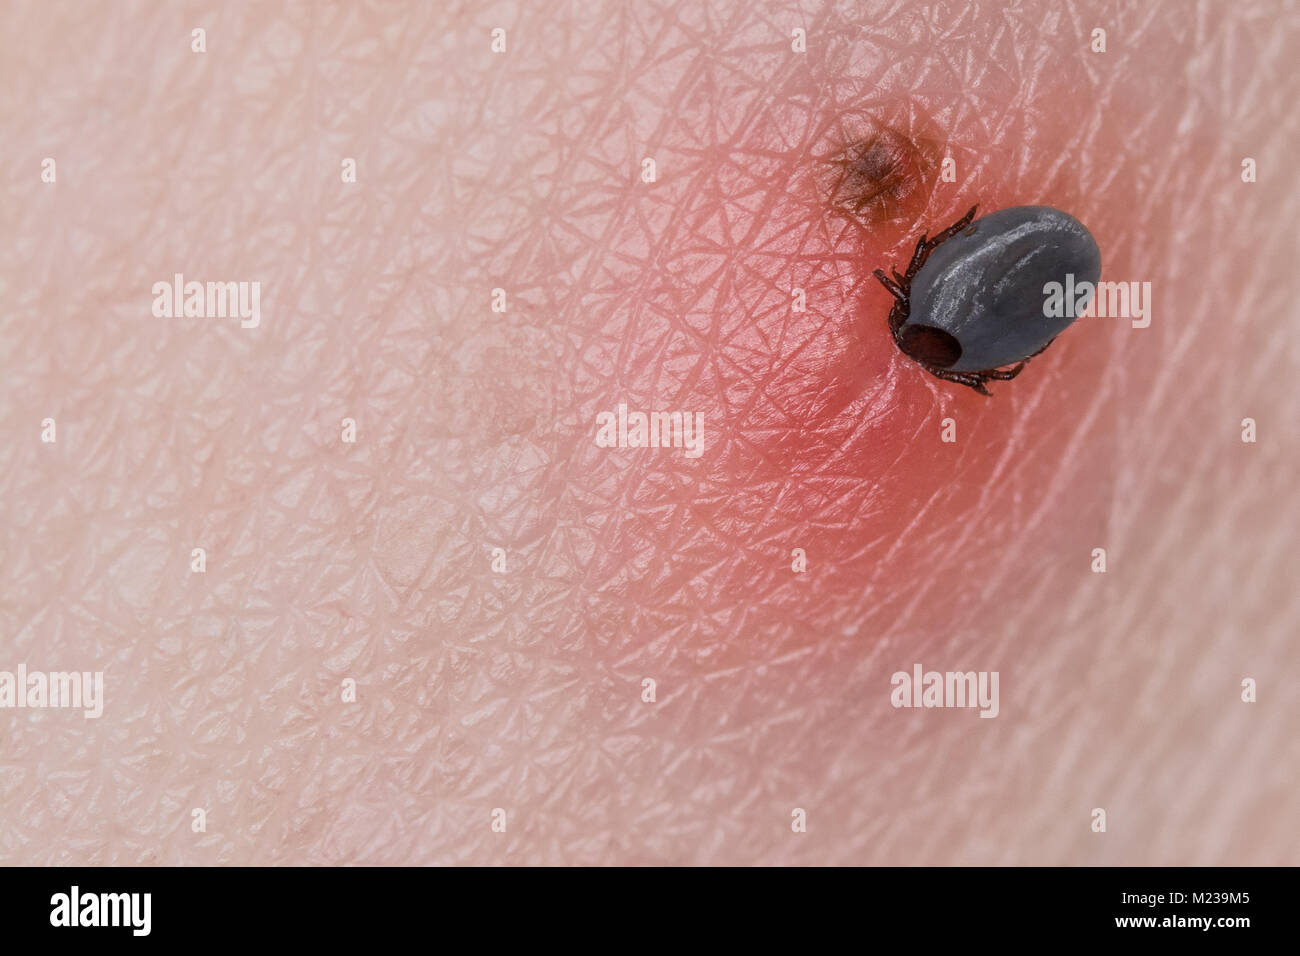 Tick und Sommersprossen. Ixodes ricinus. In der Nähe von kleinen parasitische Milbe beim saugen Blut auf der menschlichen Haut mit dem Muttermal. Enzephalitis, Lyme Krankheit. Stockfoto